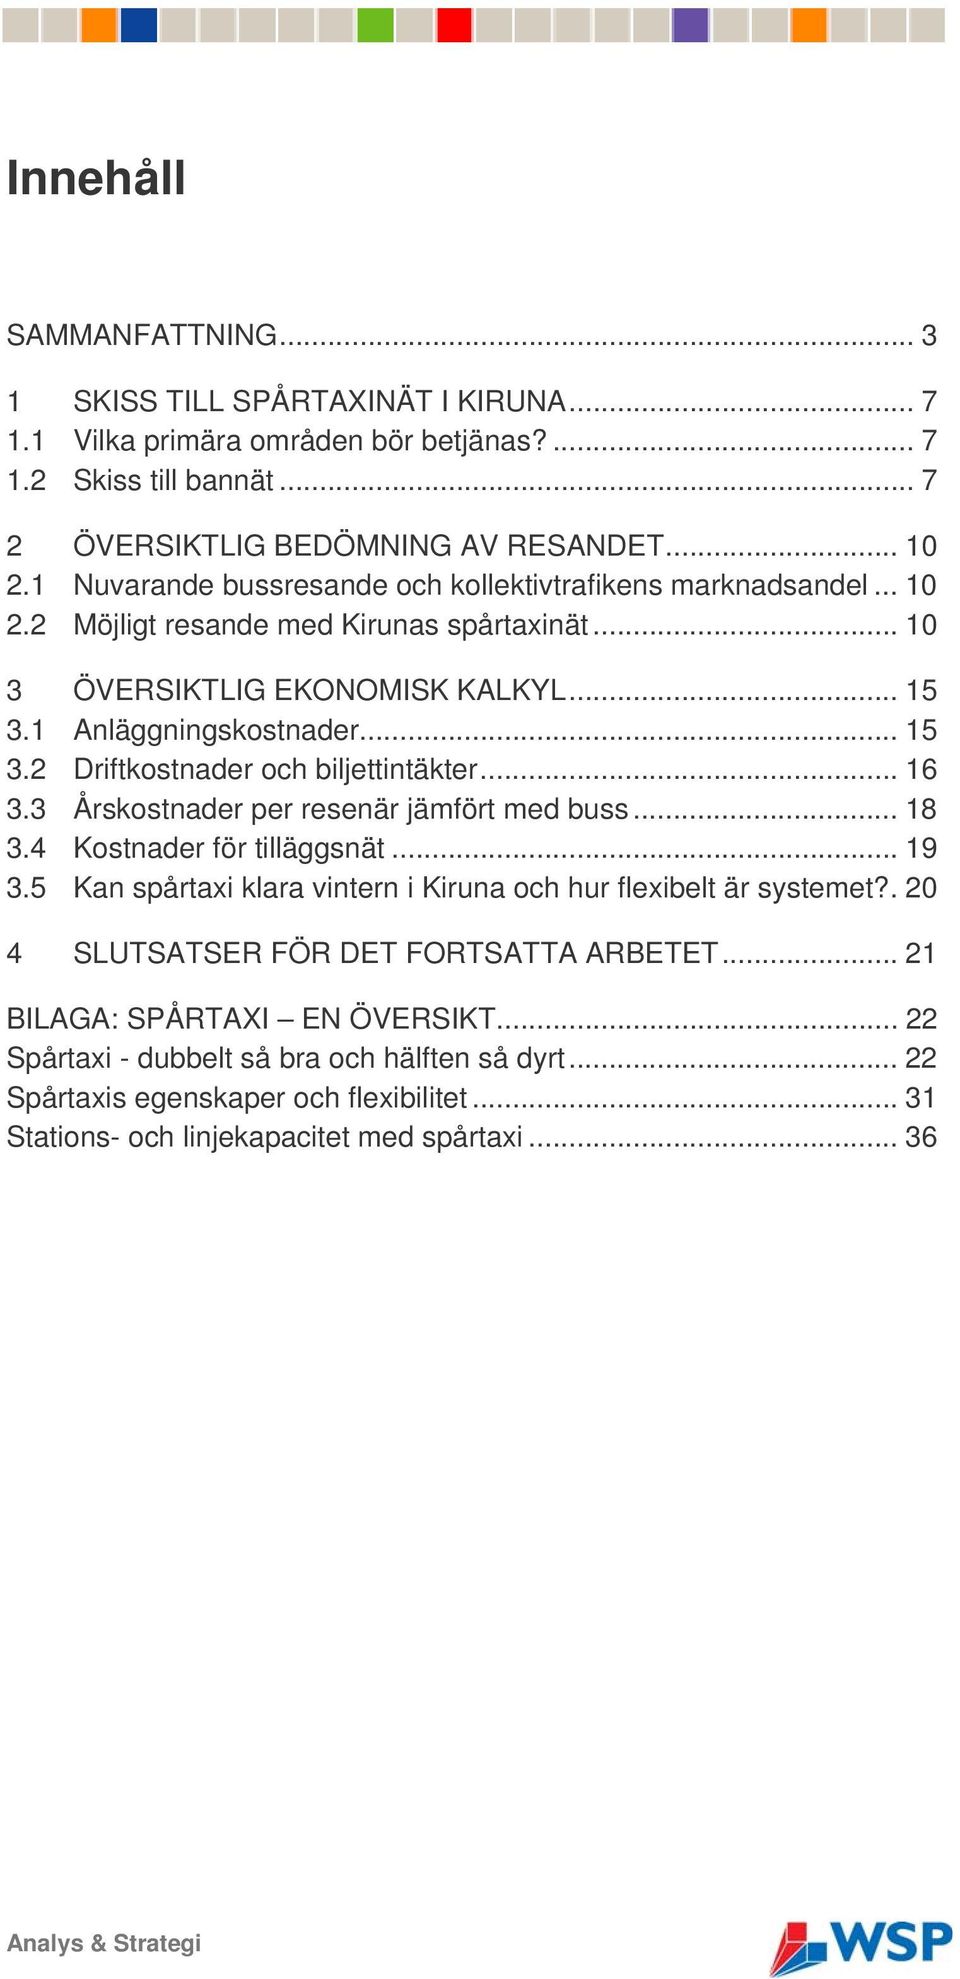 .. 16 3.3 Årskostnader per resenär jämfört med buss... 18 3.4 Kostnader för tilläggsnät... 19 3.5 Kan spårtaxi klara vintern i Kiruna och hur flexibelt är systemet?